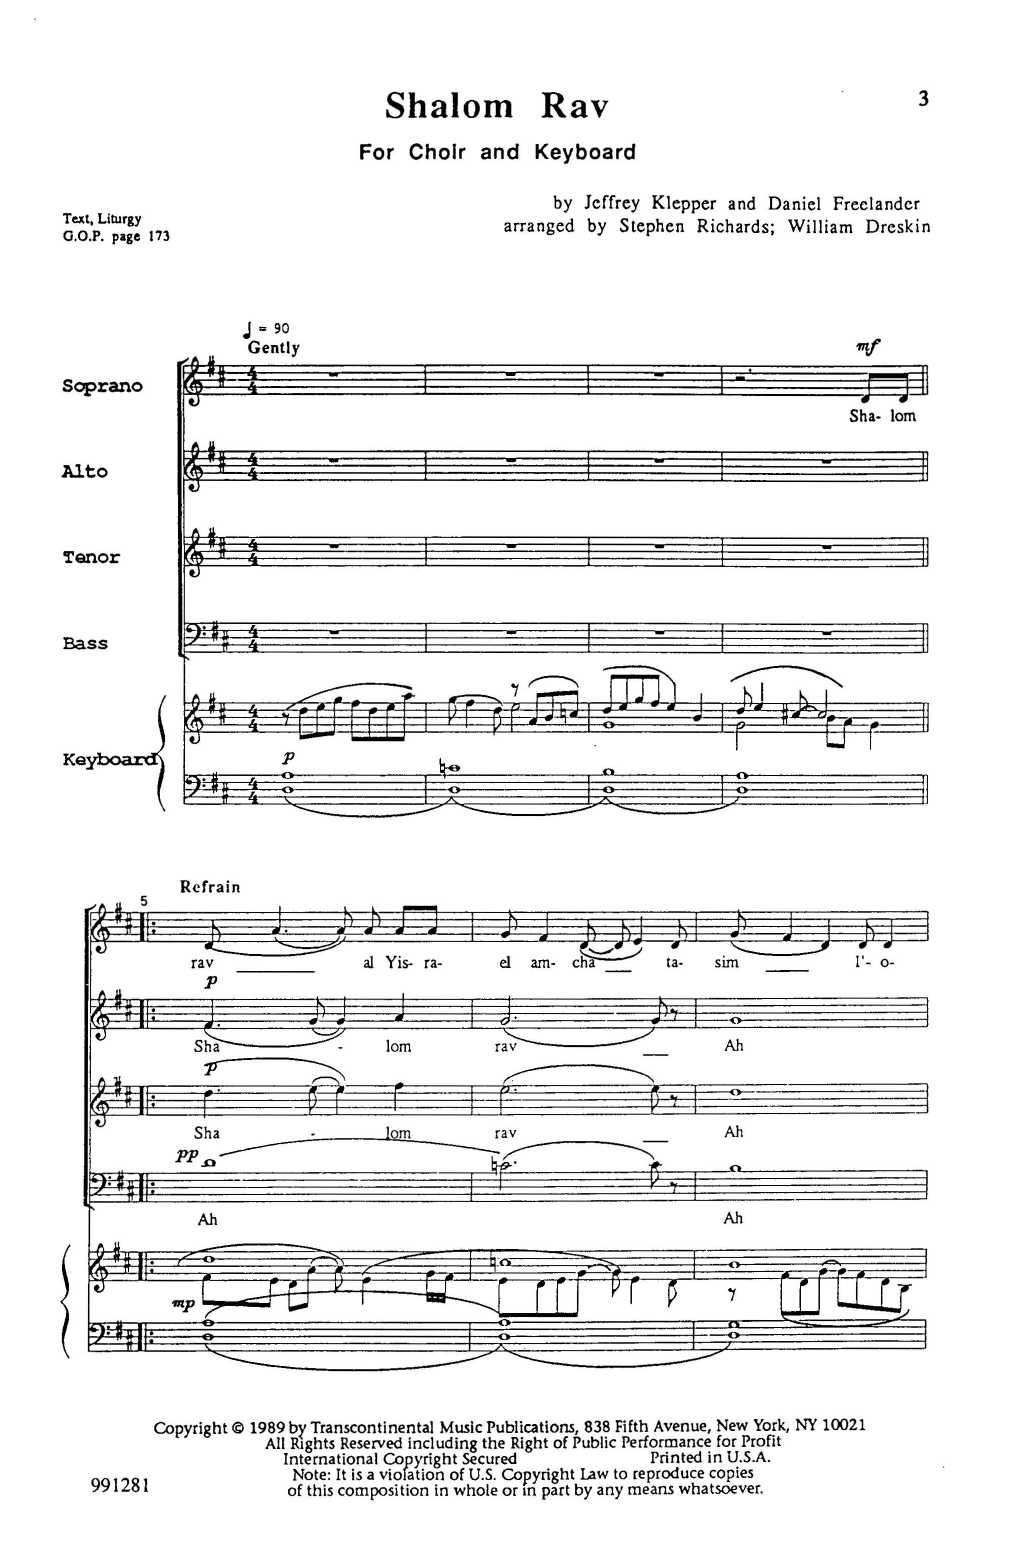 Jeffrey Klepper and Daniel Freelander Shalom Rav (arr. Stephen Richards and William Dreskin) Sheet Music Notes & Chords for SATB Choir - Download or Print PDF